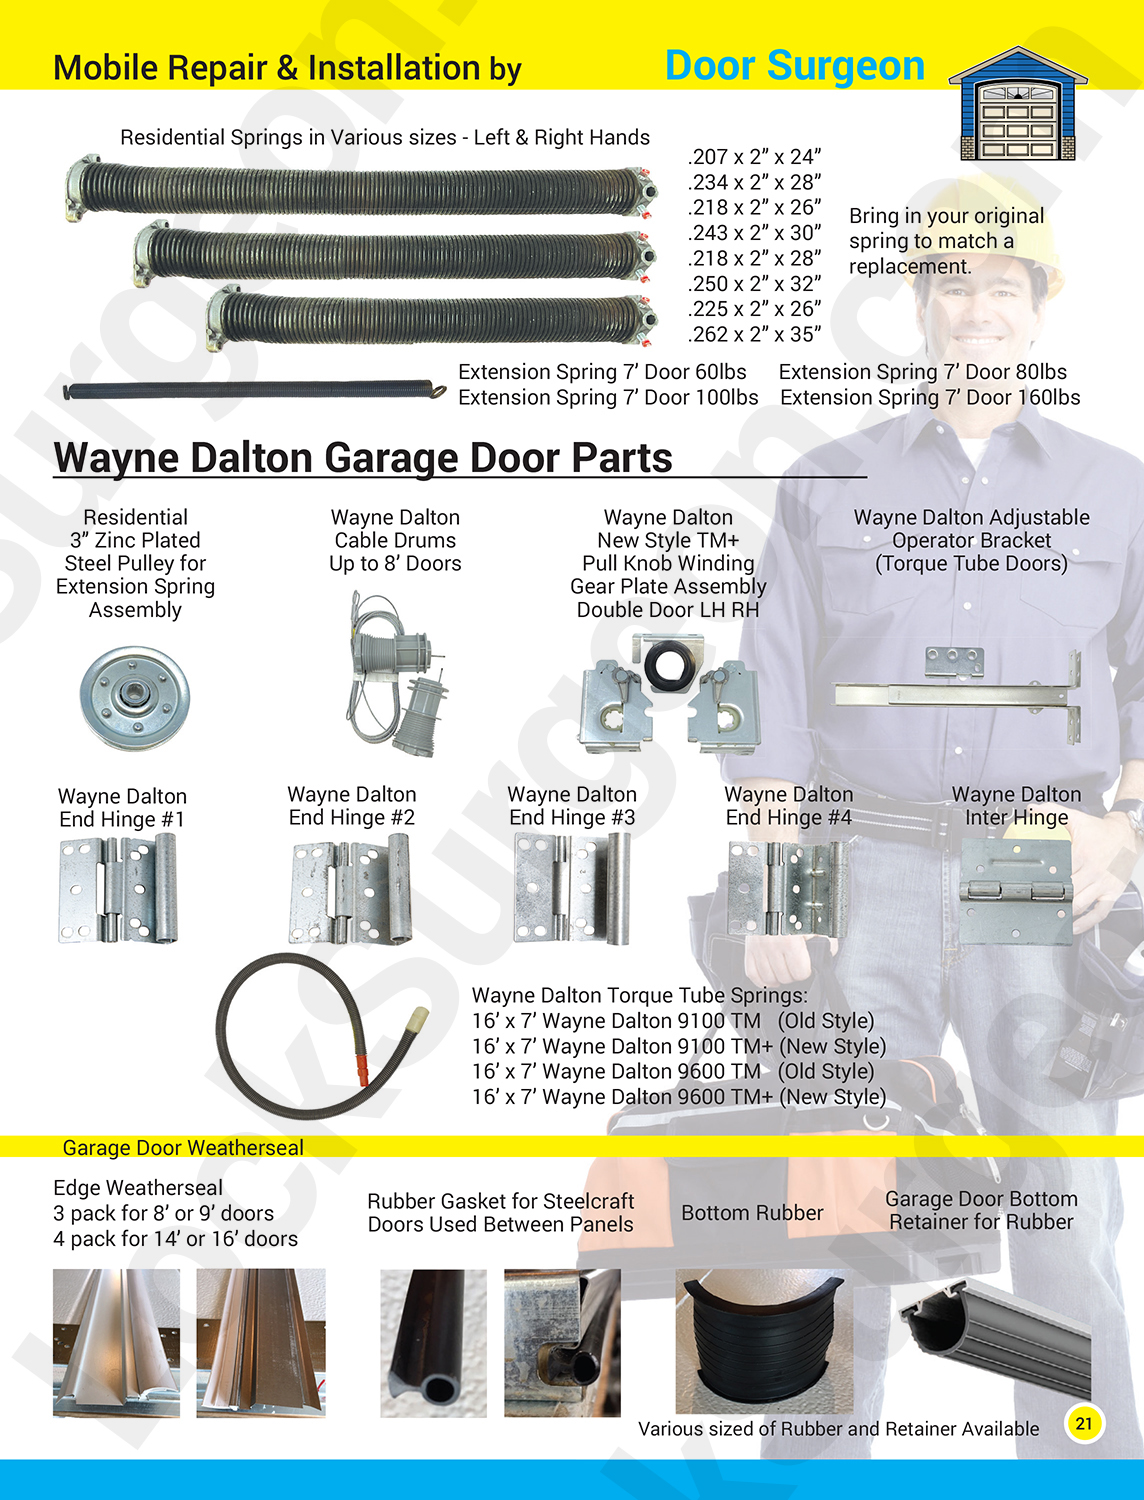 Garage door part solutions for home. Garage door repairs, replacement parts new garage doors Acheson